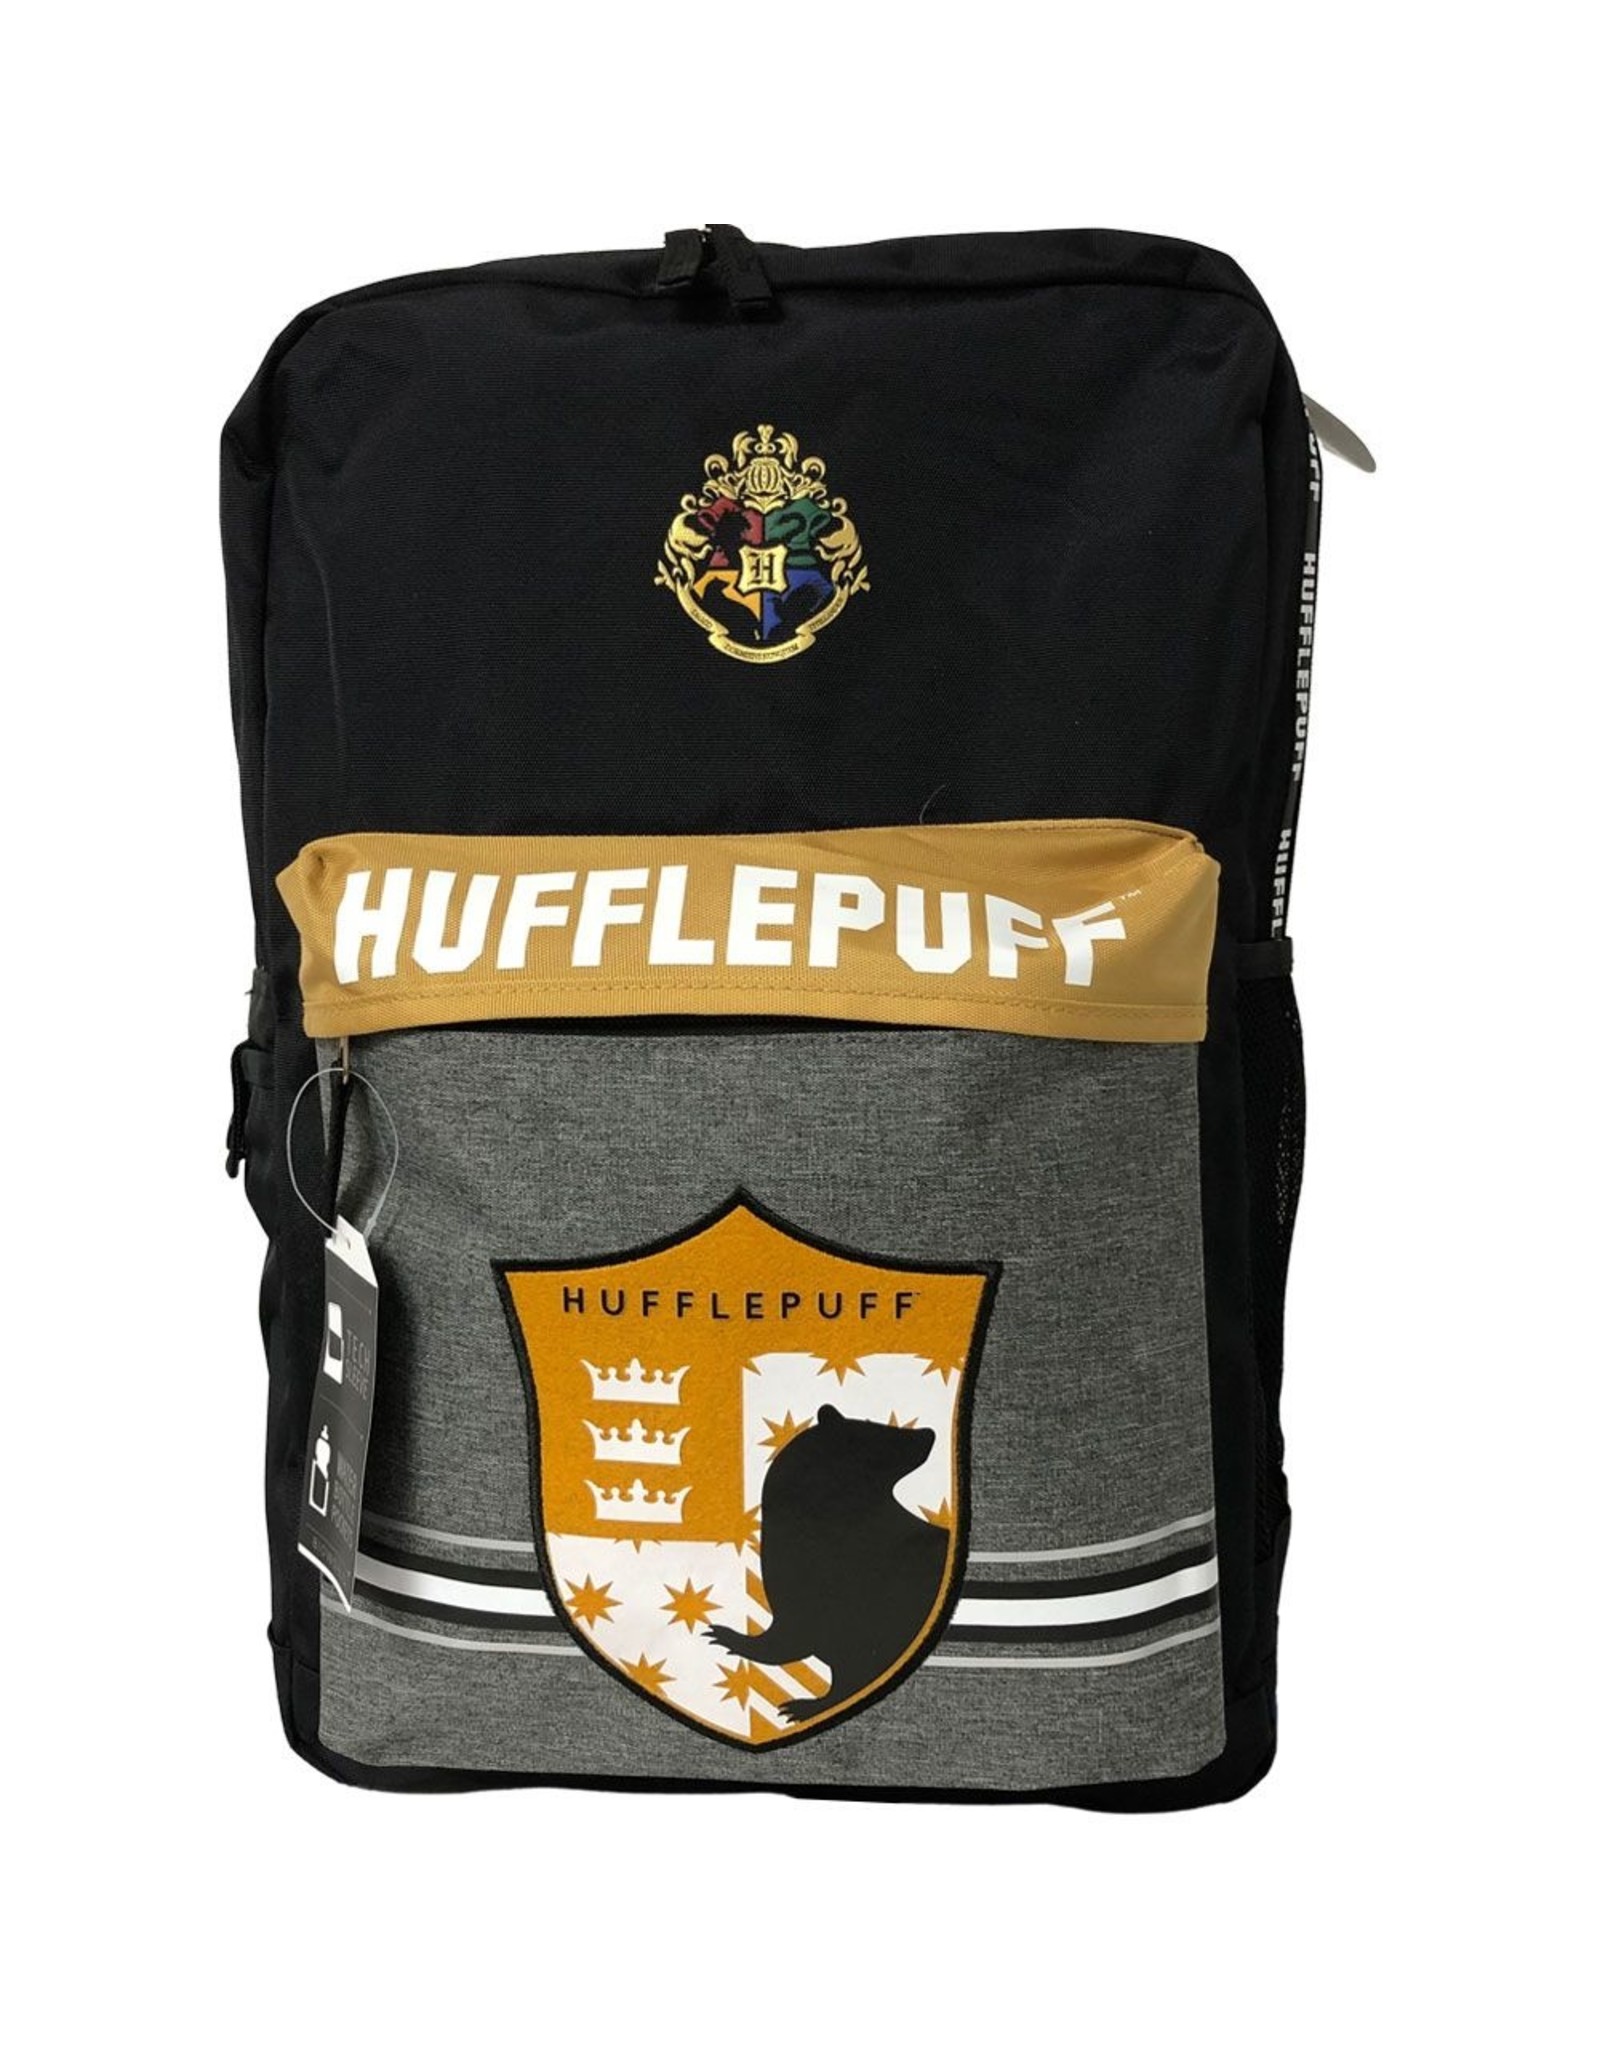 Bioworld Merchandise - Hufflepuff Premium laptop backpack 15"